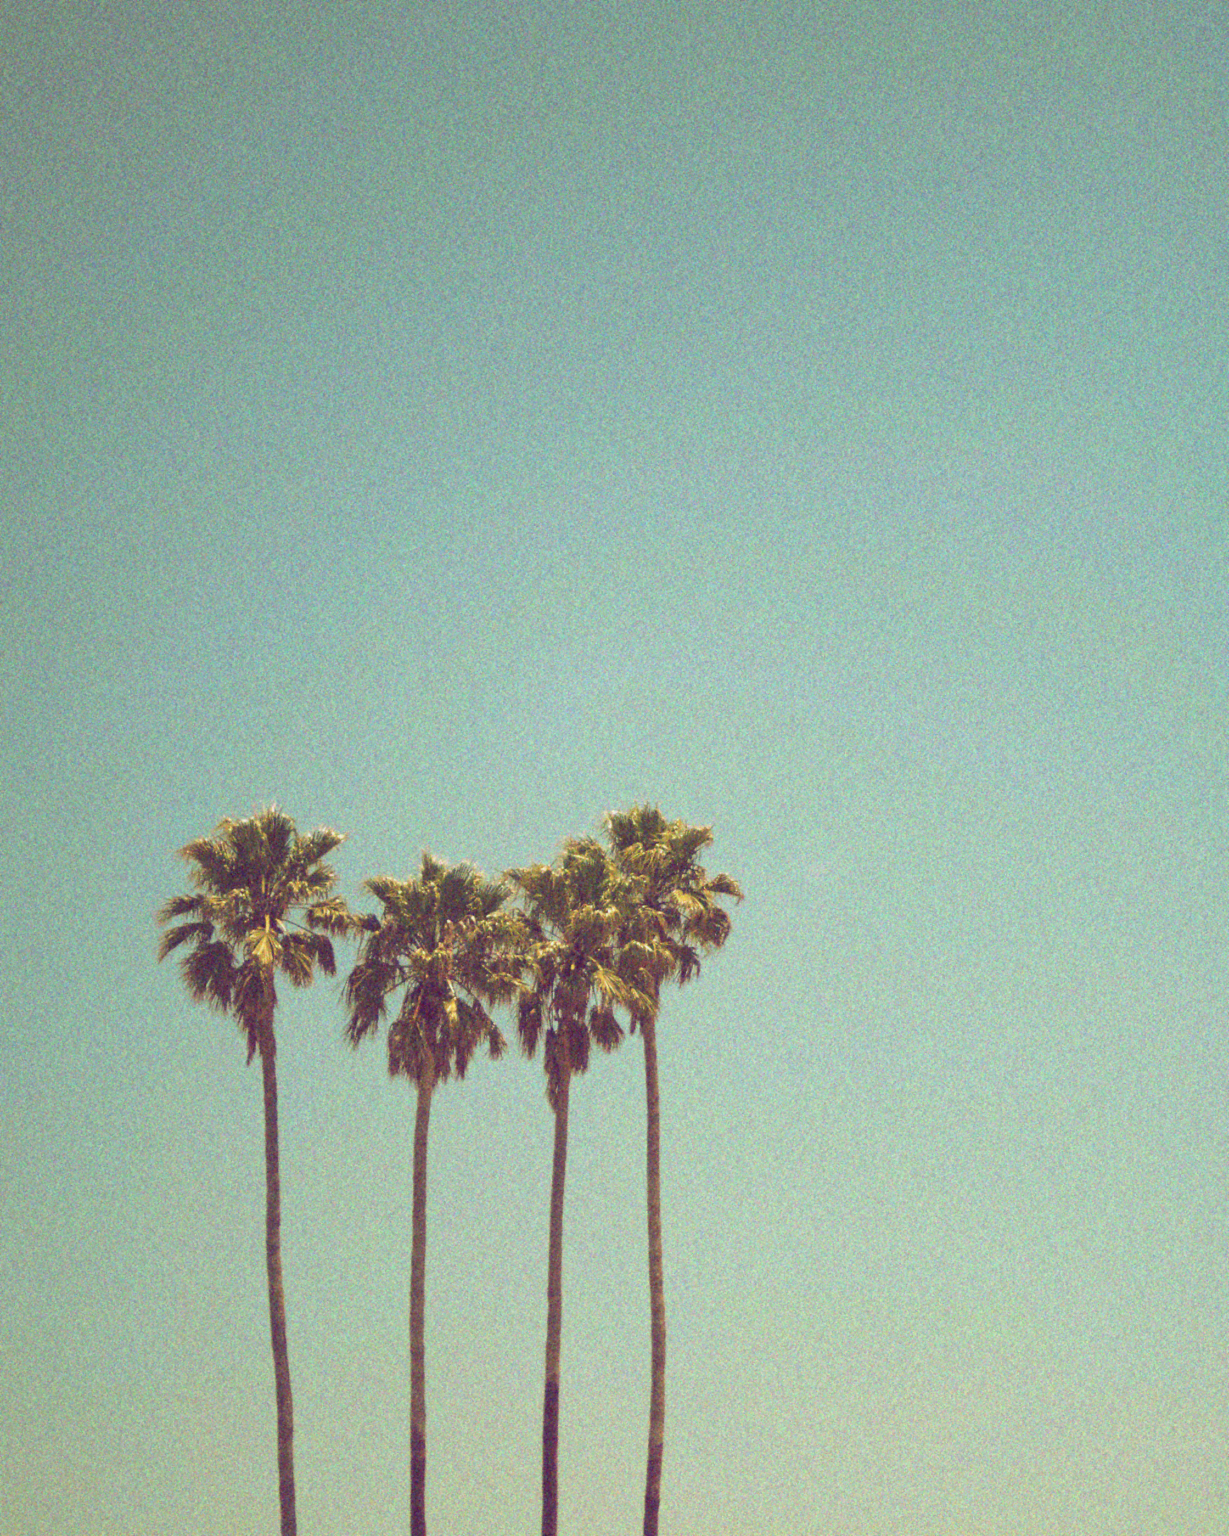 Das Bild zeigt vier Palmen, die nebeneinander hoch in den blauen Himmel wachsen.